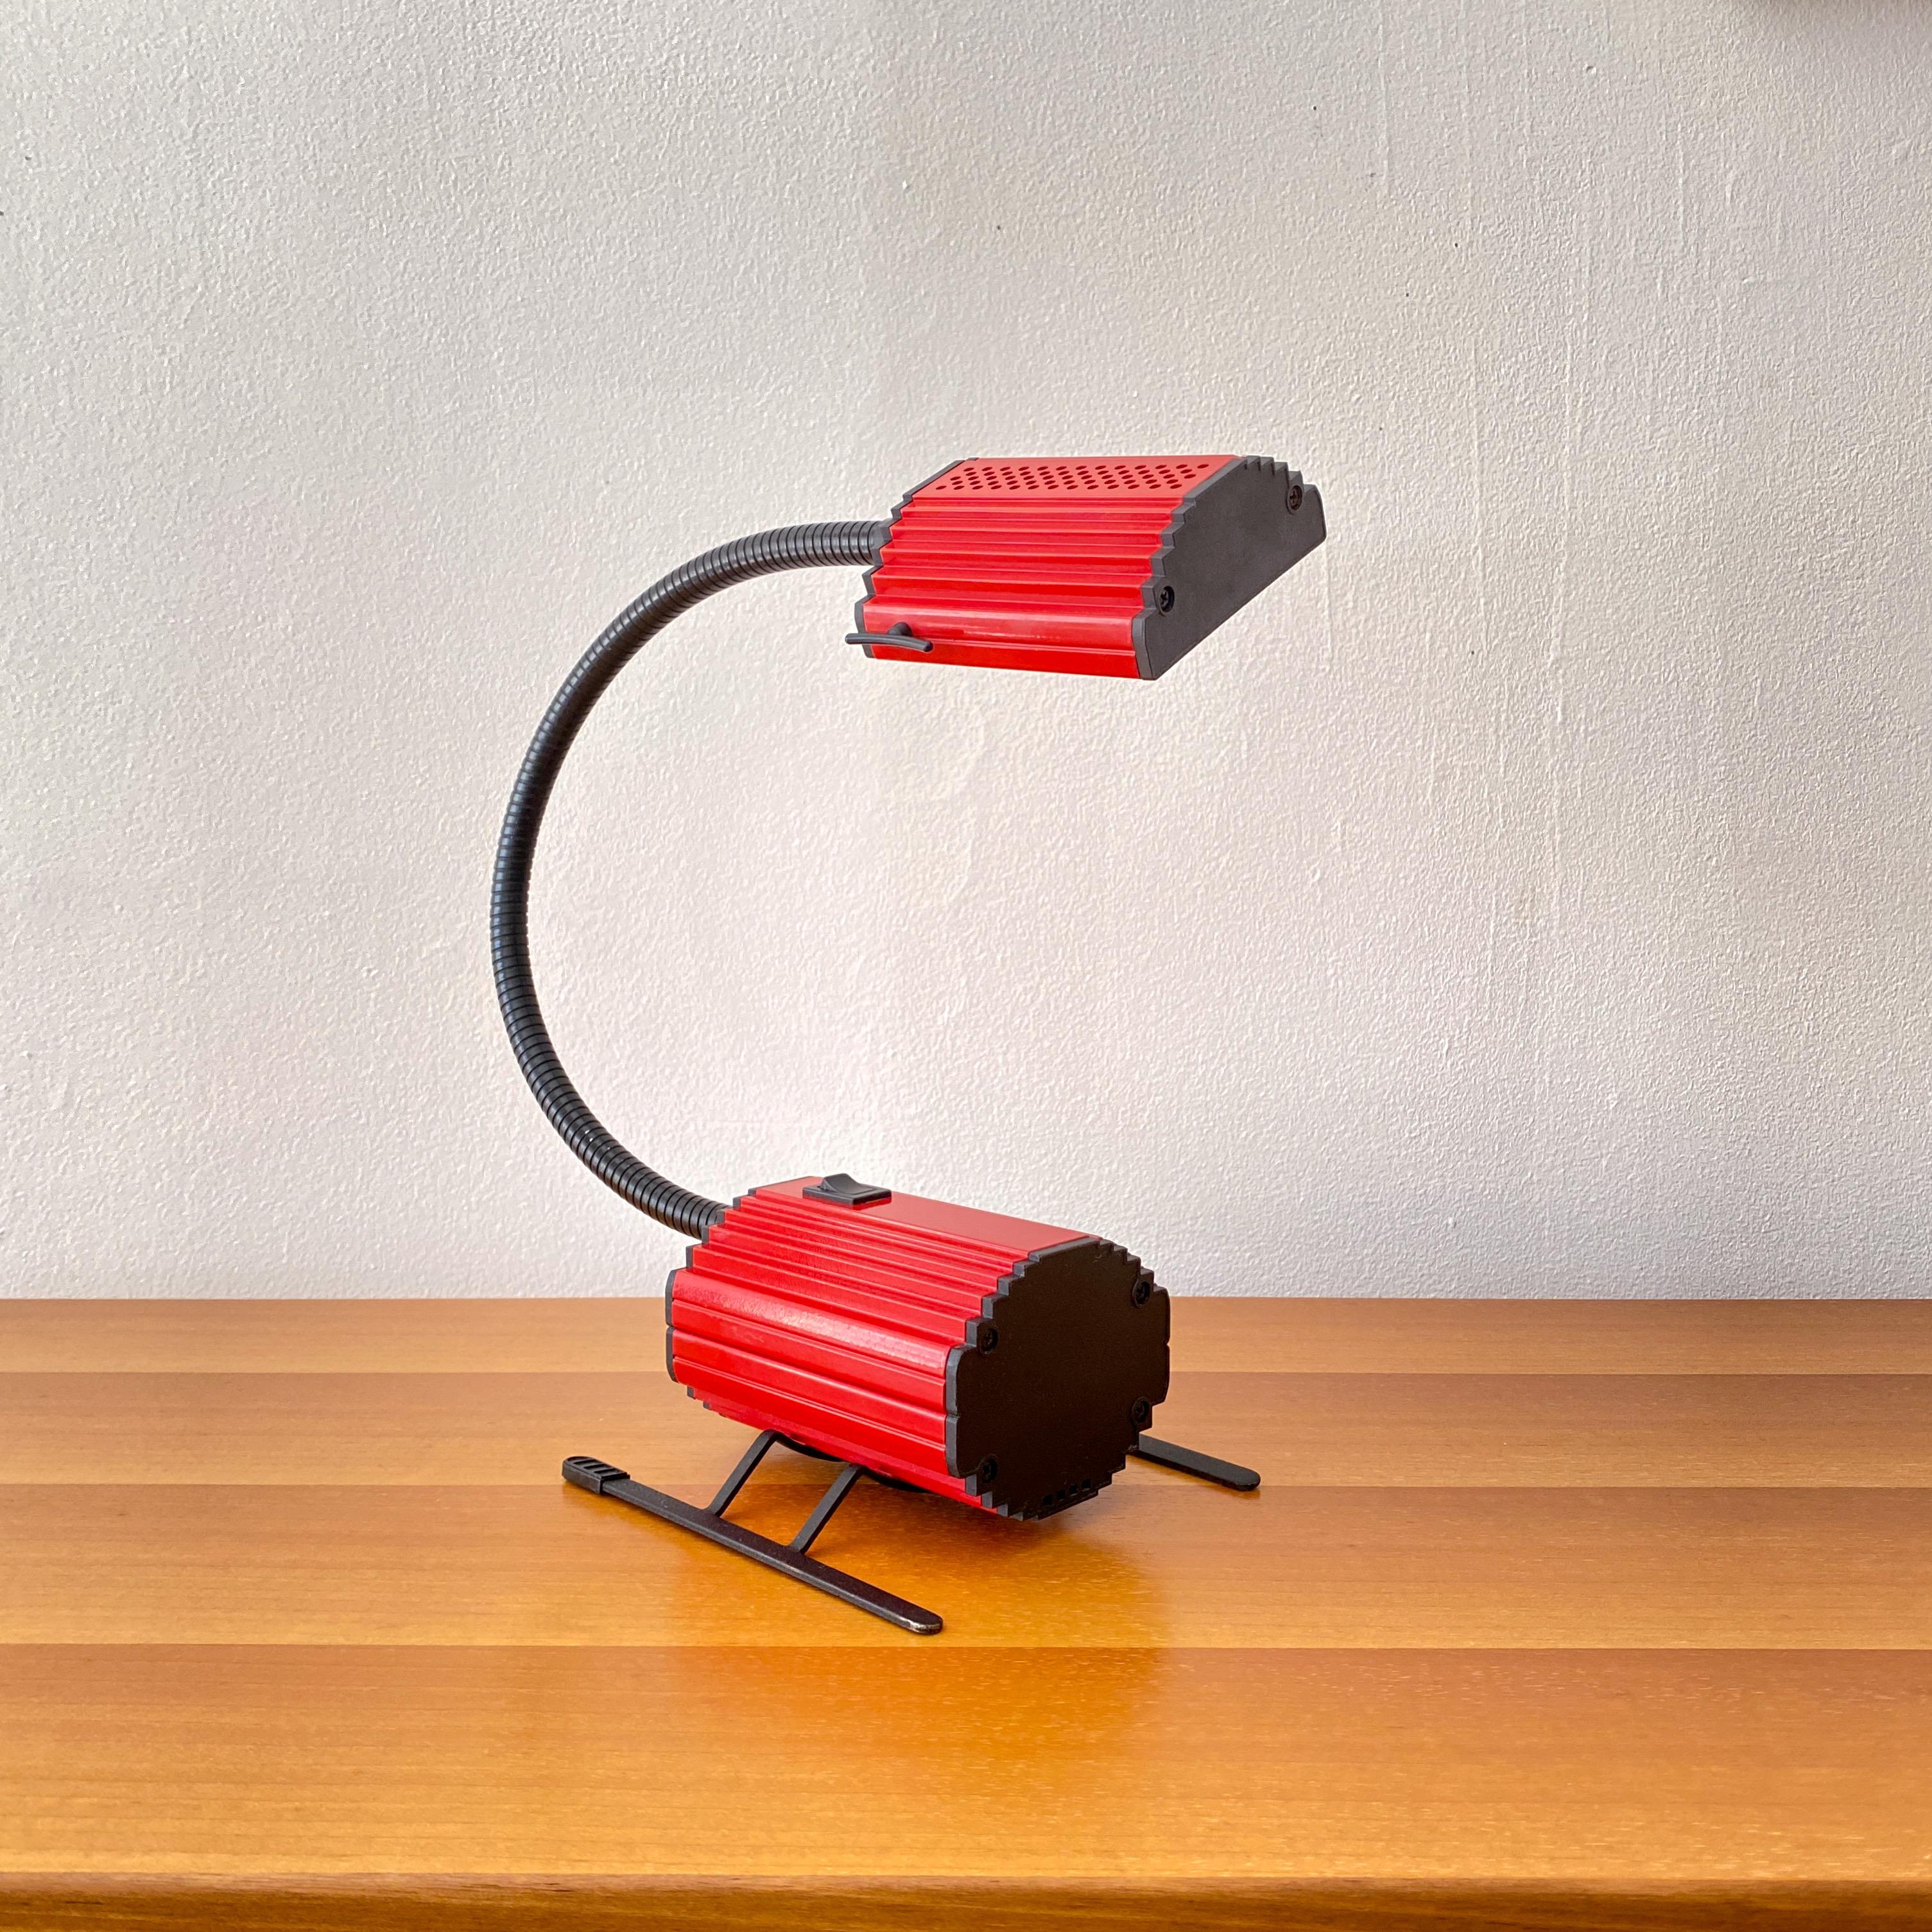 Eine Vintage-Tischlampe, 1983 von Enzio Didone für Arteluce entworfen und in Italien hergestellt.  Die Lampe ist eine Halogenlampe mit einer rot lackierten Metallhaube und einem Gehäuse. Die Endkappen an Motorhaube und Karosserie sind aus schwarzem